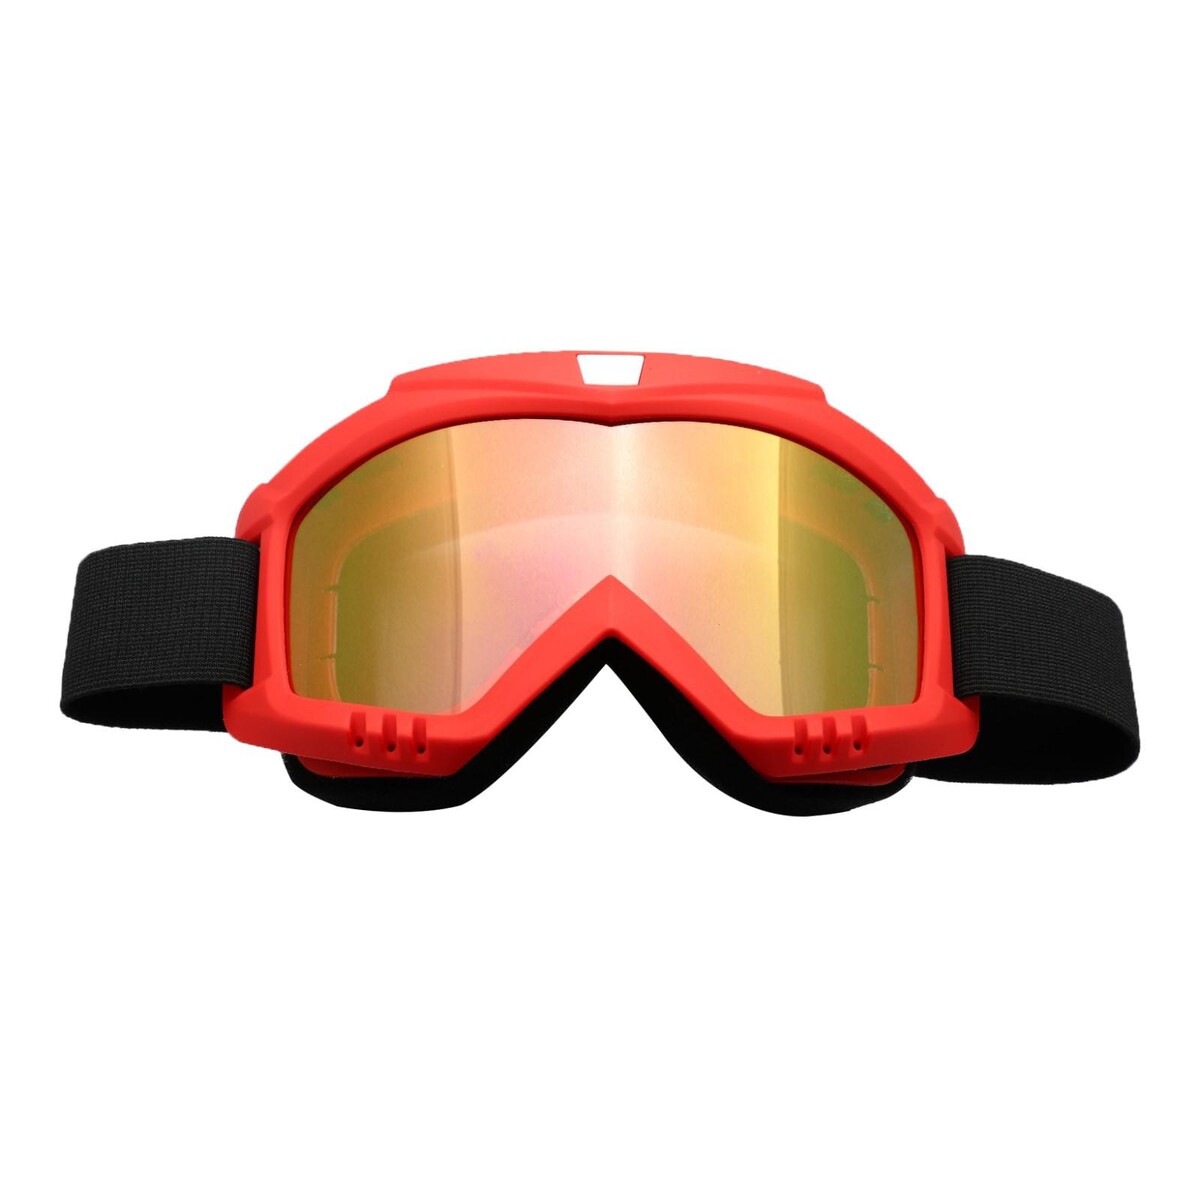 Очки-маска для езды на мототехнике, стекло золотой хром, цвет красный, ом-13 очки маска для езды на мототехнике разборные стекло оранжевый хром